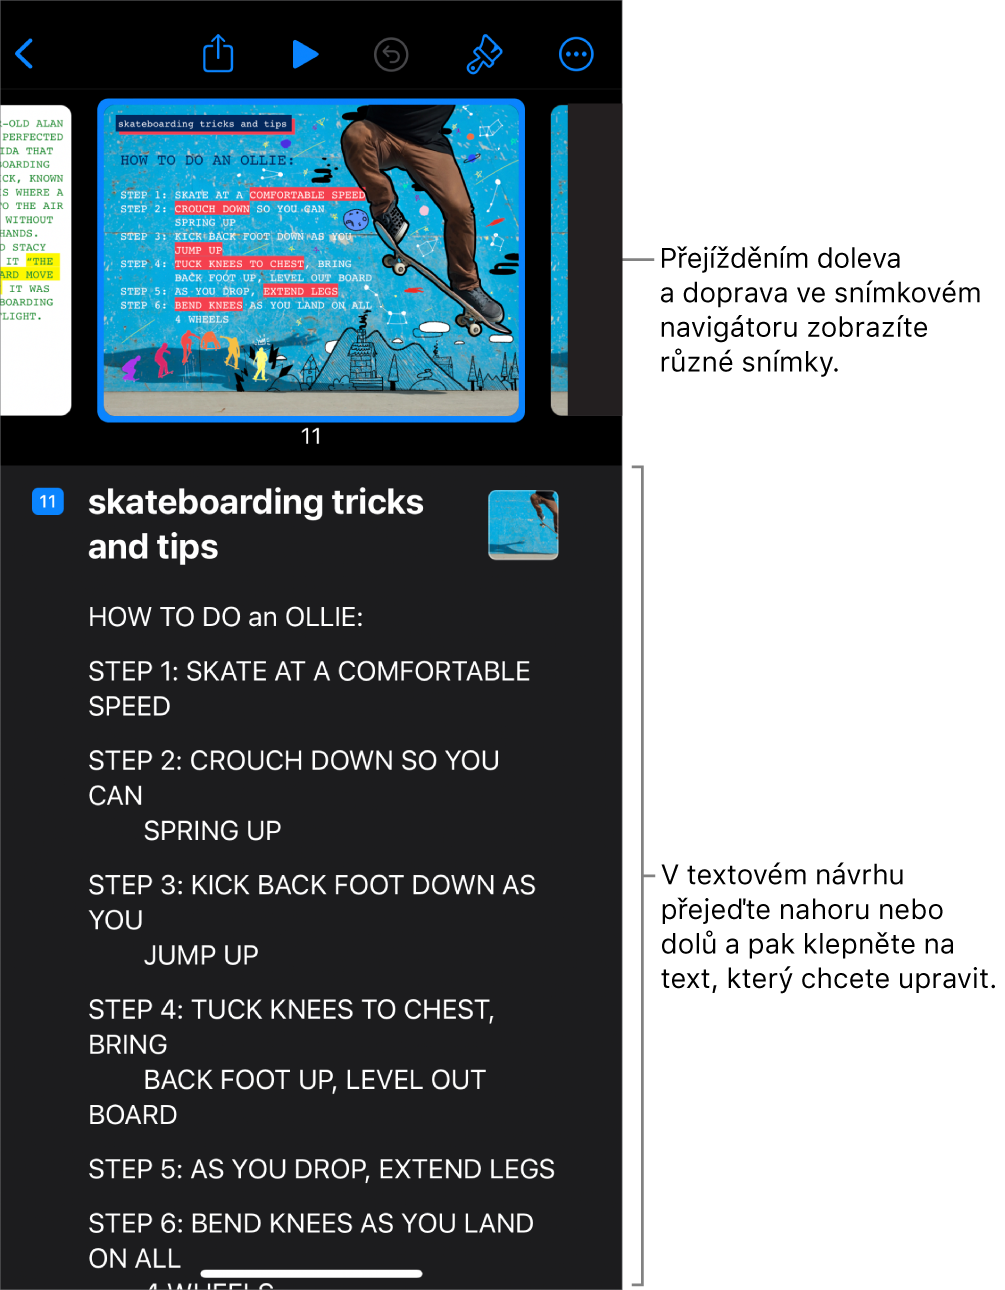 Zobrazení osnovy s vodorovným navigátorem snímků nahoře na obrazovce a textovou osnovou dole